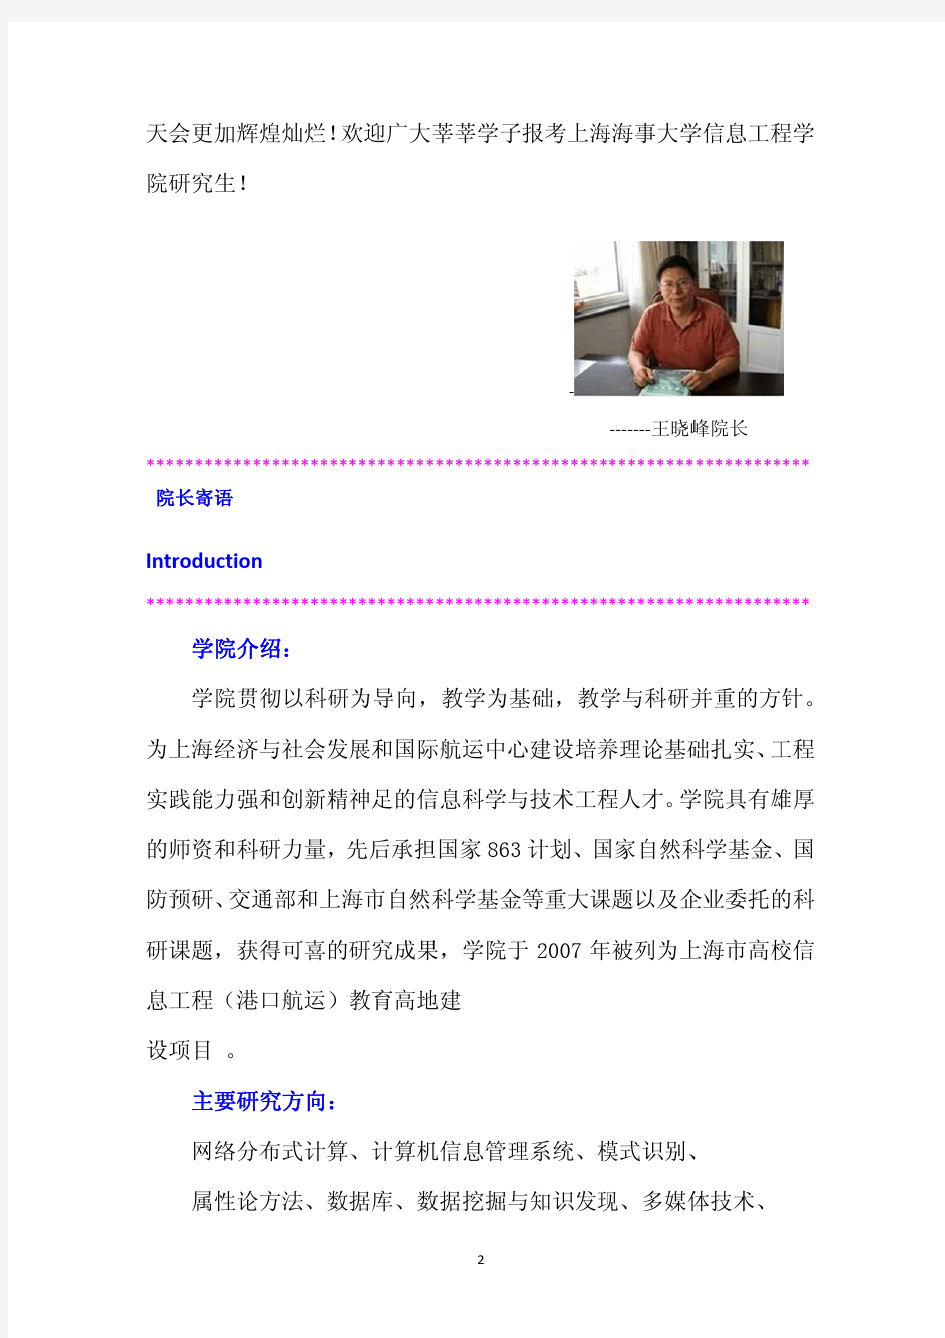 上海海事大学信息工程学院导师介绍(超详细版)